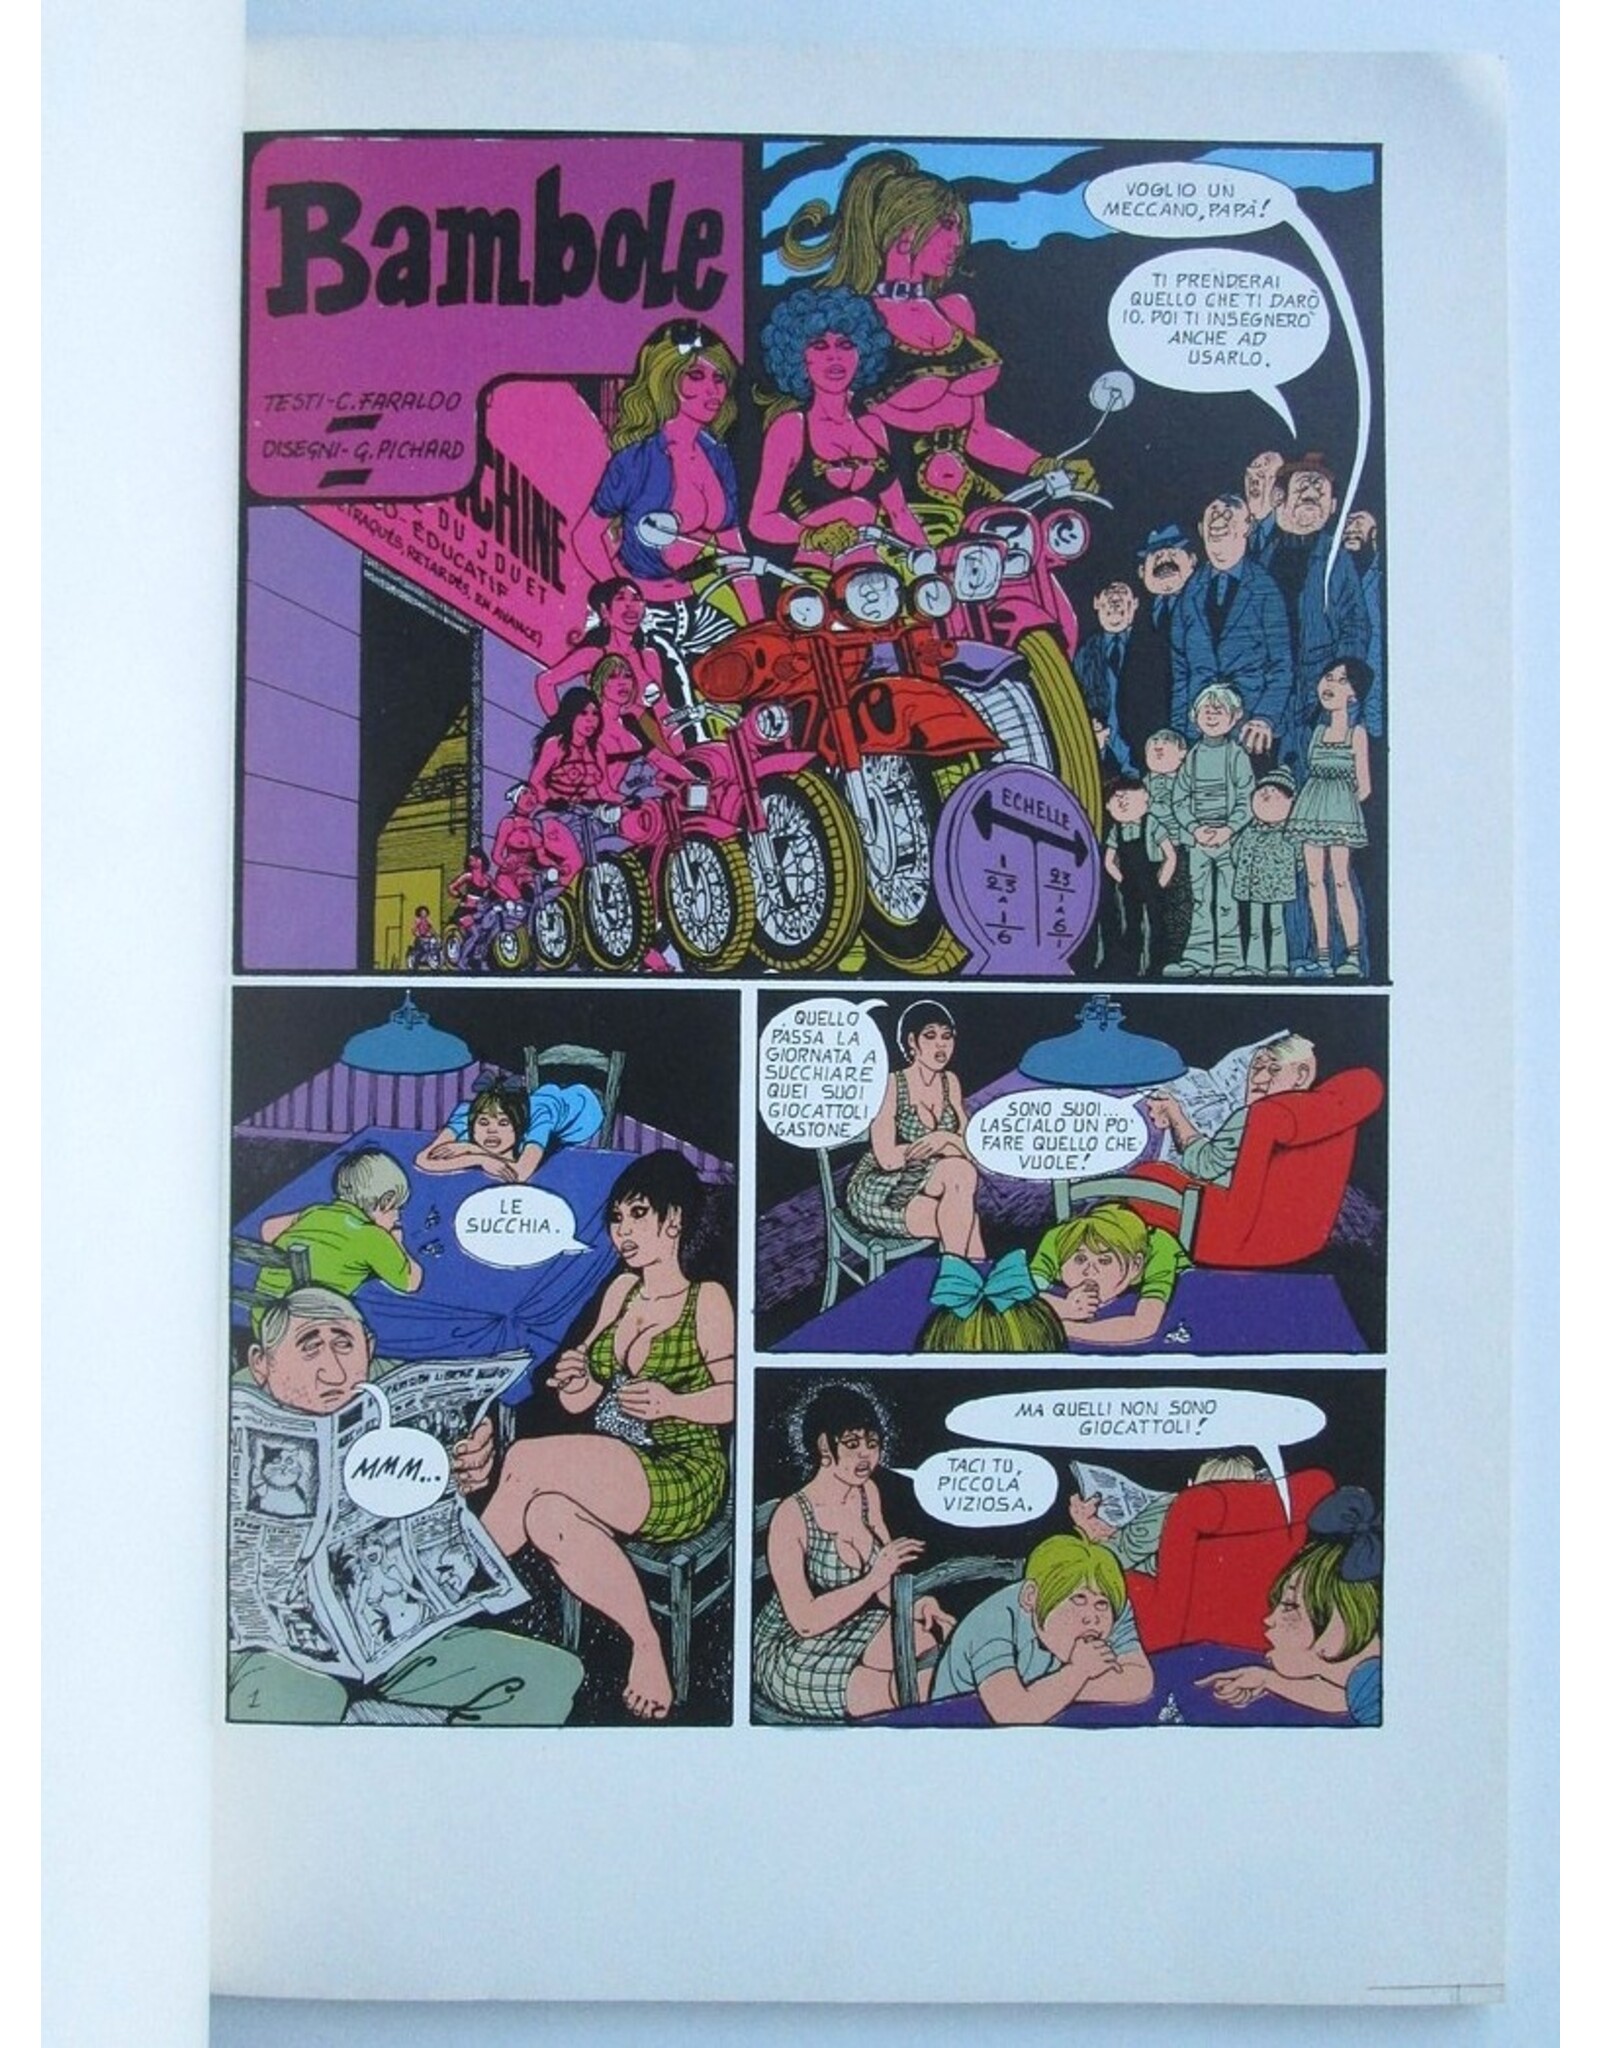 G. Pichard & C. Faraldo - 1984 presenta: I grandi protagonisti del fumetto mondiale. Bambole